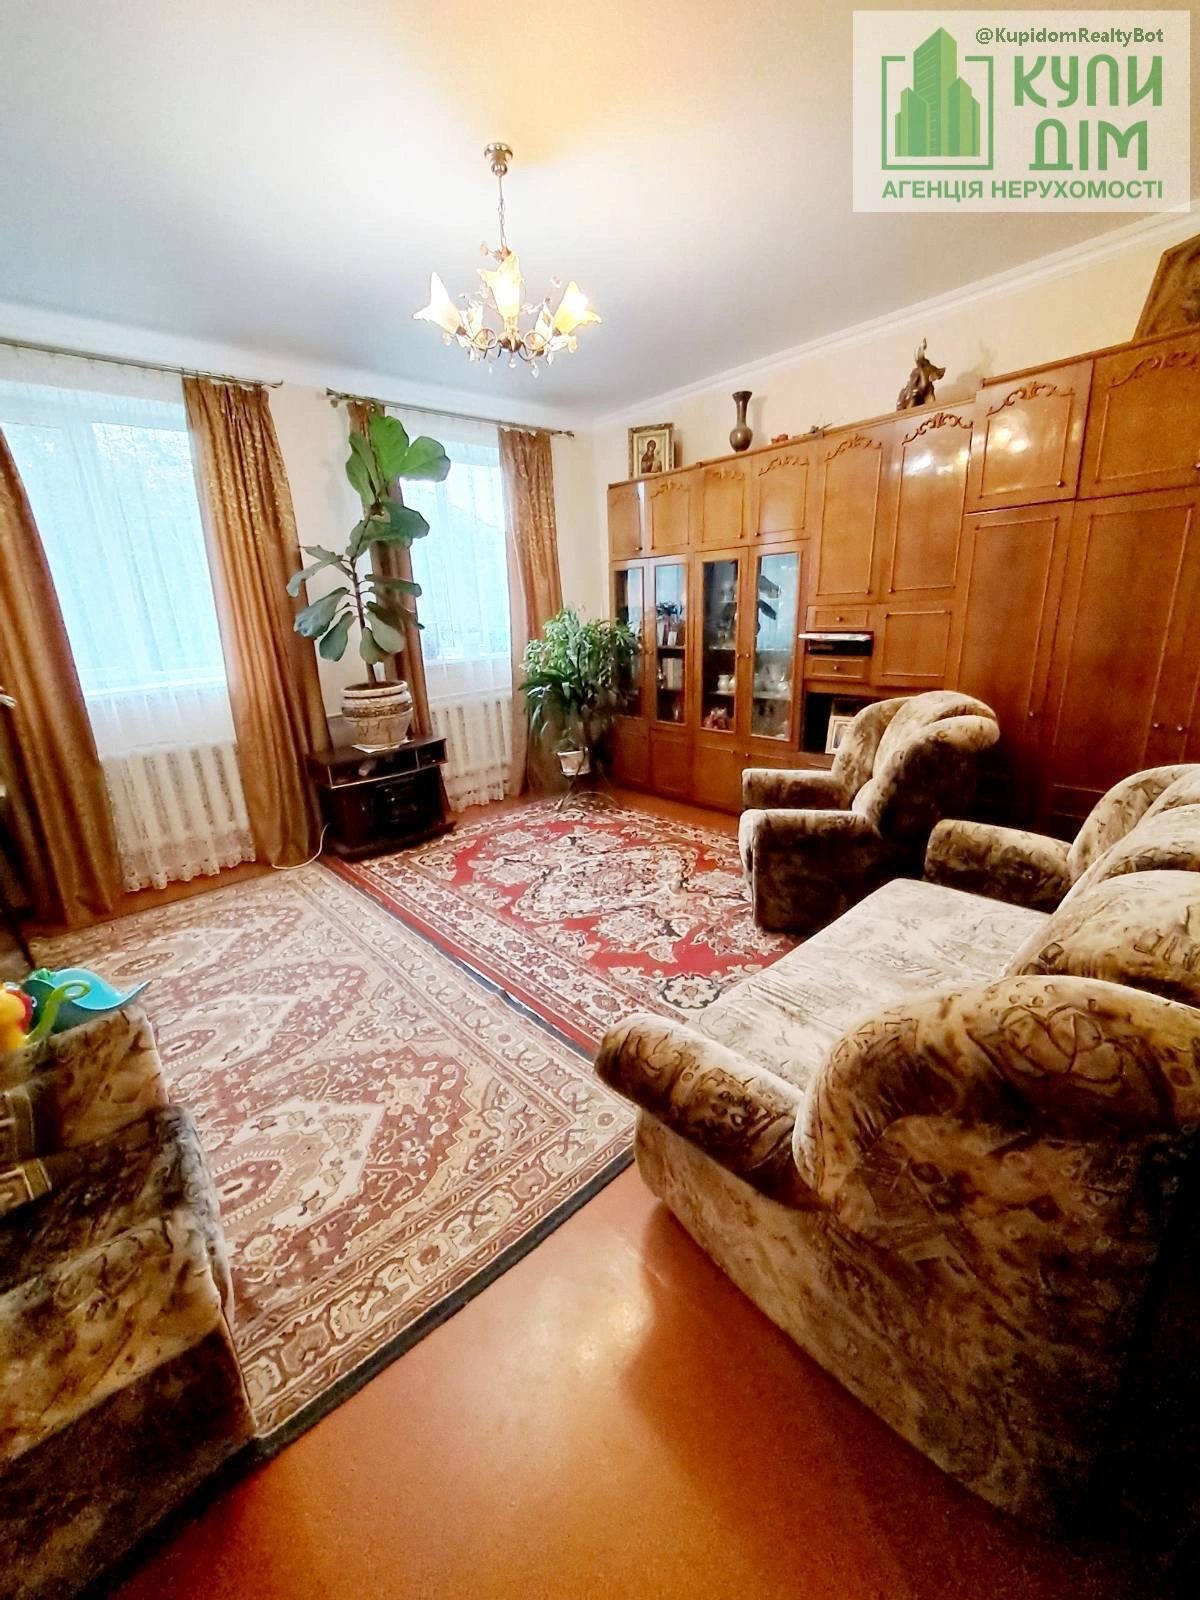 Продам міцний будинок 86 м2 з меблями та технікою в районі В.Балки.